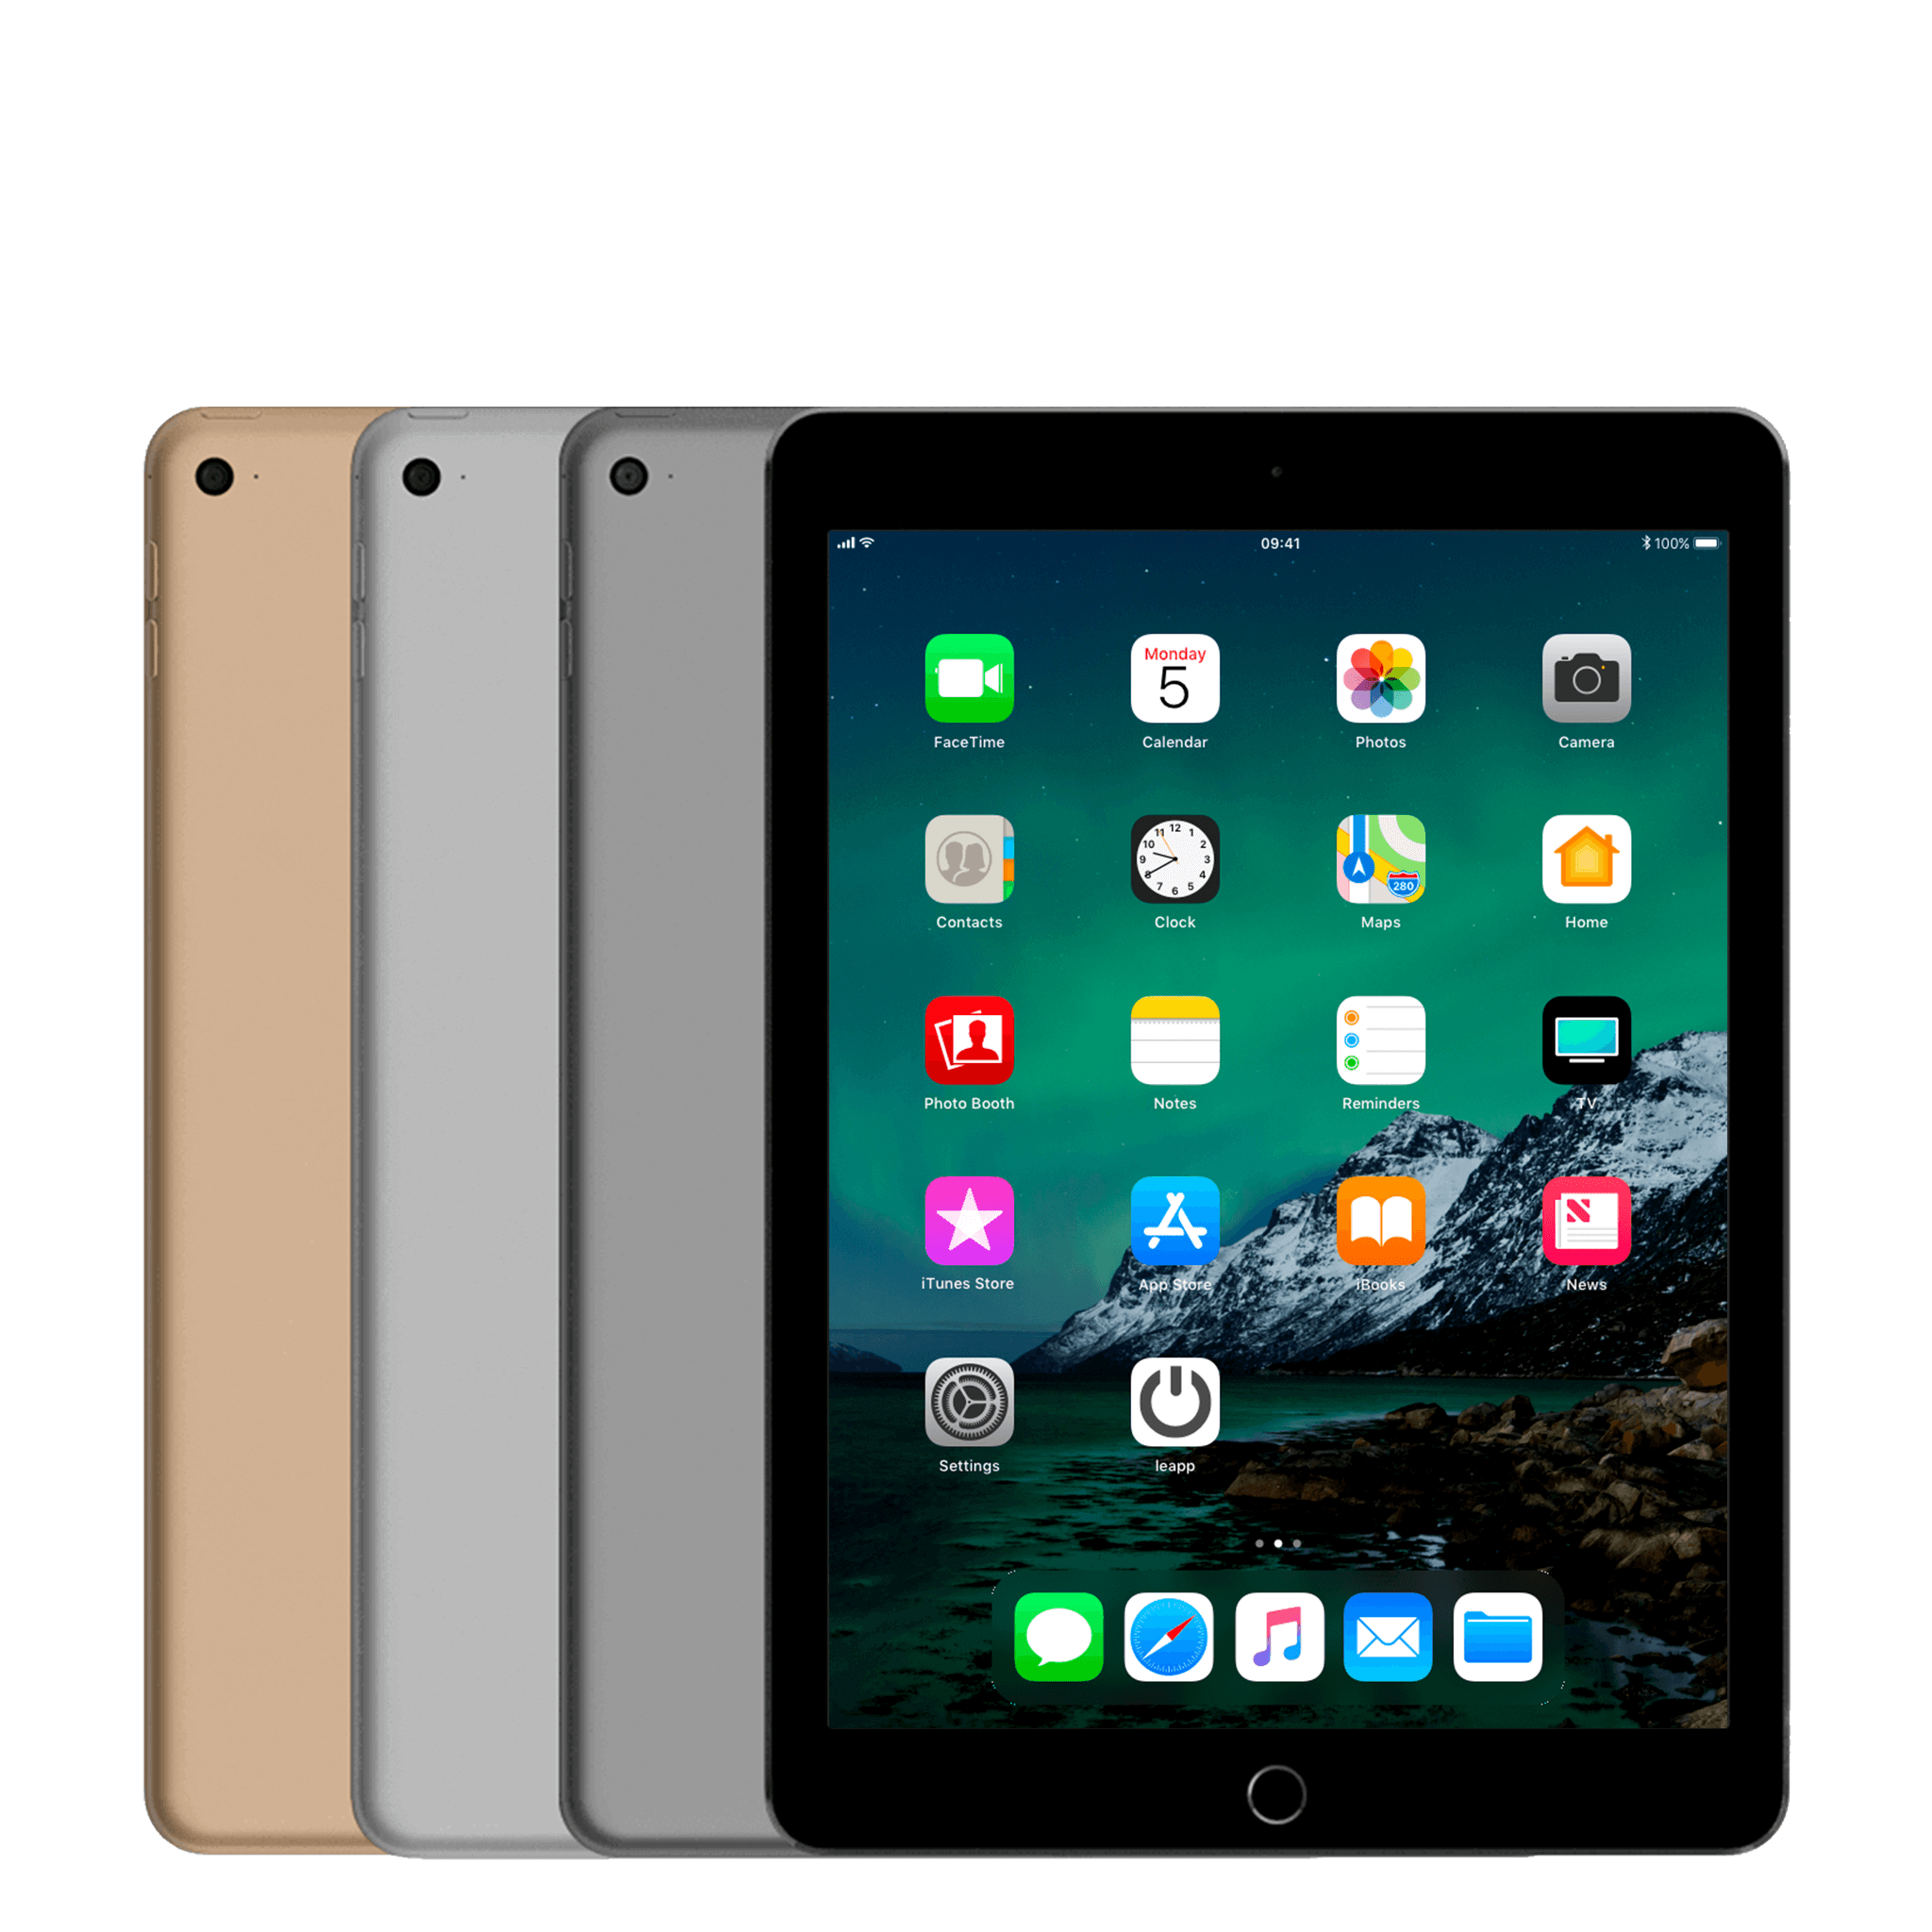 Đánh giá iPad Air 2 mới nhất: Thiết kế sang trọng, hiệu năng ấn tượng ...